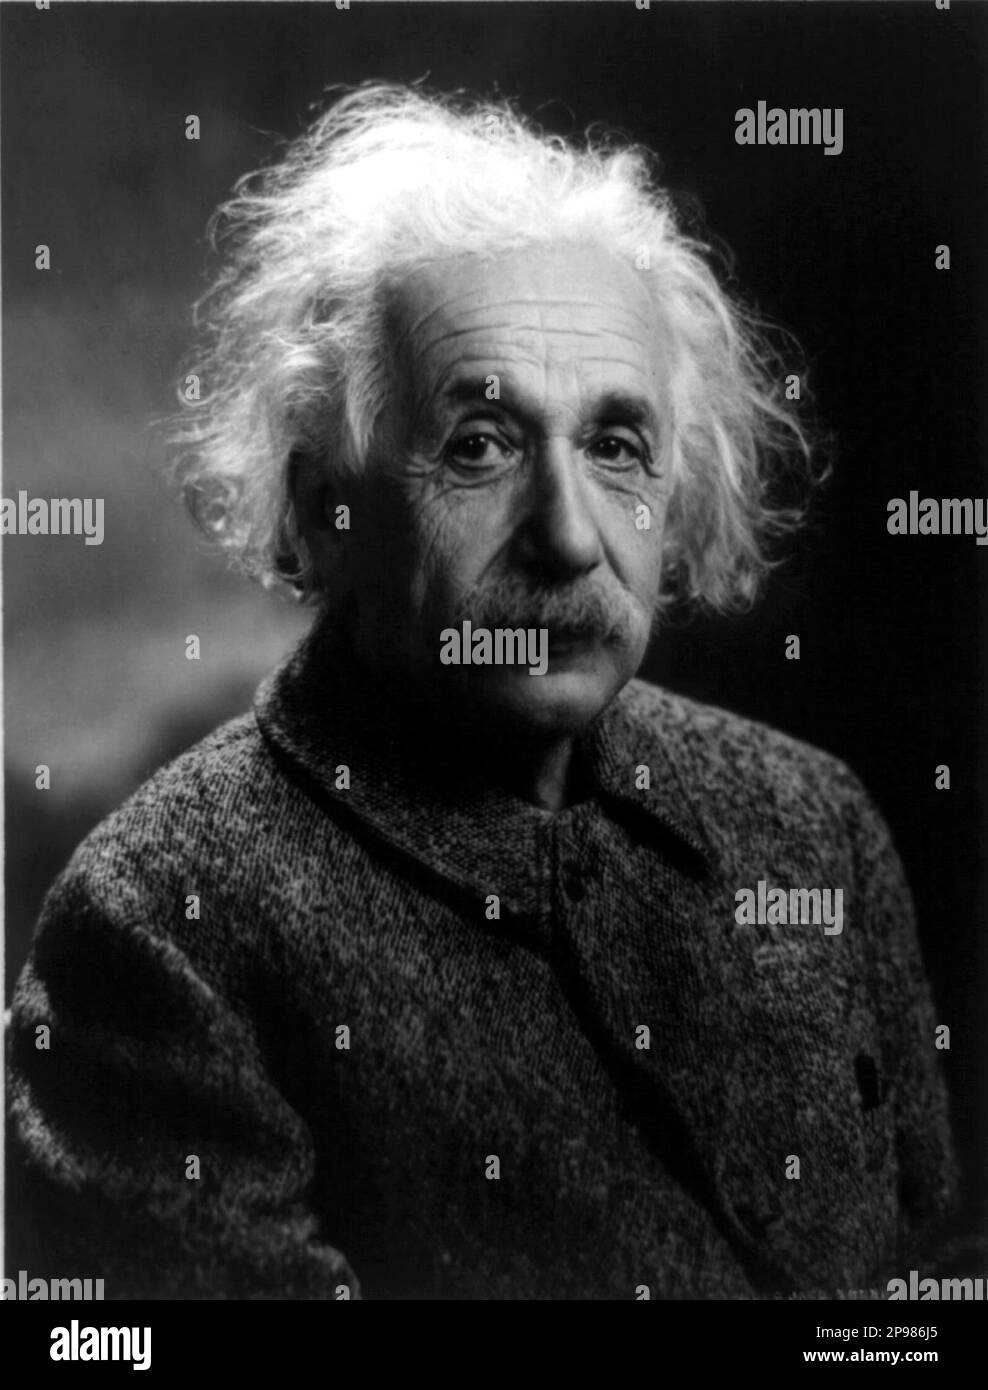 1947 , Provincetown , New Jersey , USA : der deutsche Physiker ALBERT EINSTEIN ( 1879 - 1955 ) , Nobelpreisträger 1921 . Foto von Oren Jack Turner, Princeton, N.J. - foto storiche - foto storica - scienziato - Wissenschaftler - Portrait - ritratto - Physik - FISICA - FISICO - SCIENZA - WISSENSCHAFT - Baffi - Schnurrbart - PREMIO NOBEL PER LA FISICA - Atomica - Atomo - scienziato - Genius - genio -- NICHT FÜR WERBEZWECKE -- -- NON PER USO PUBBLICITARIO --- ARCHIVIO GBB Stockfoto